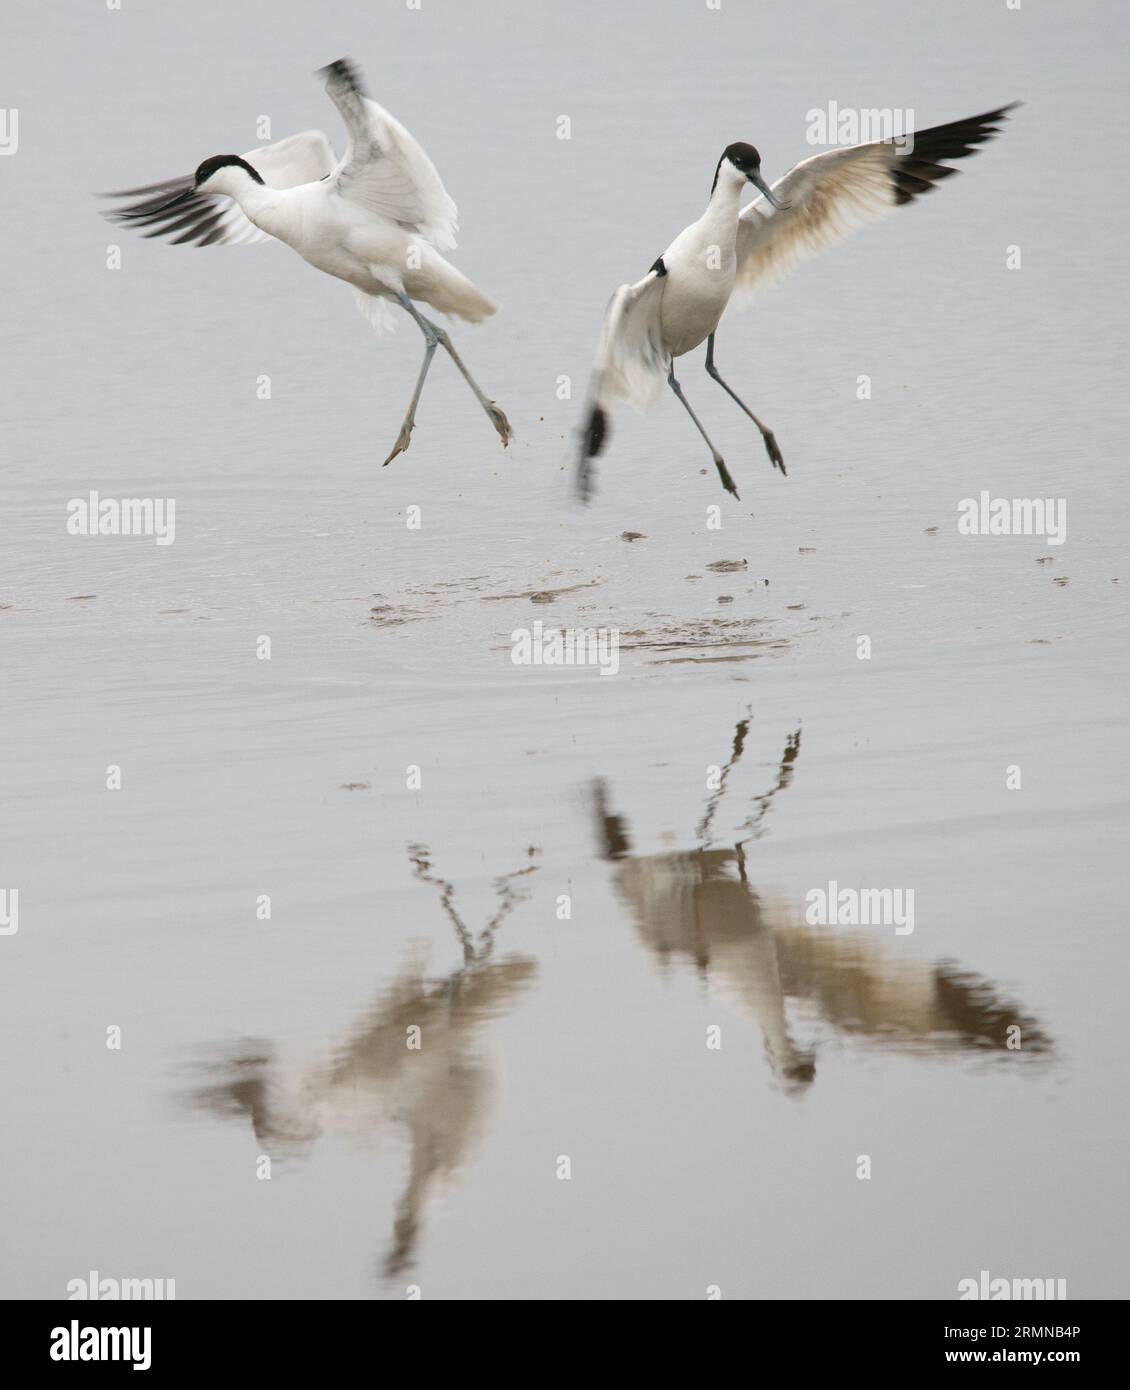 Quadratisches Bild von zwei Avocets, die von einander weg tanzen, mit ausgestreckten Flügeln und Reflexionen im Wasser Stockfoto